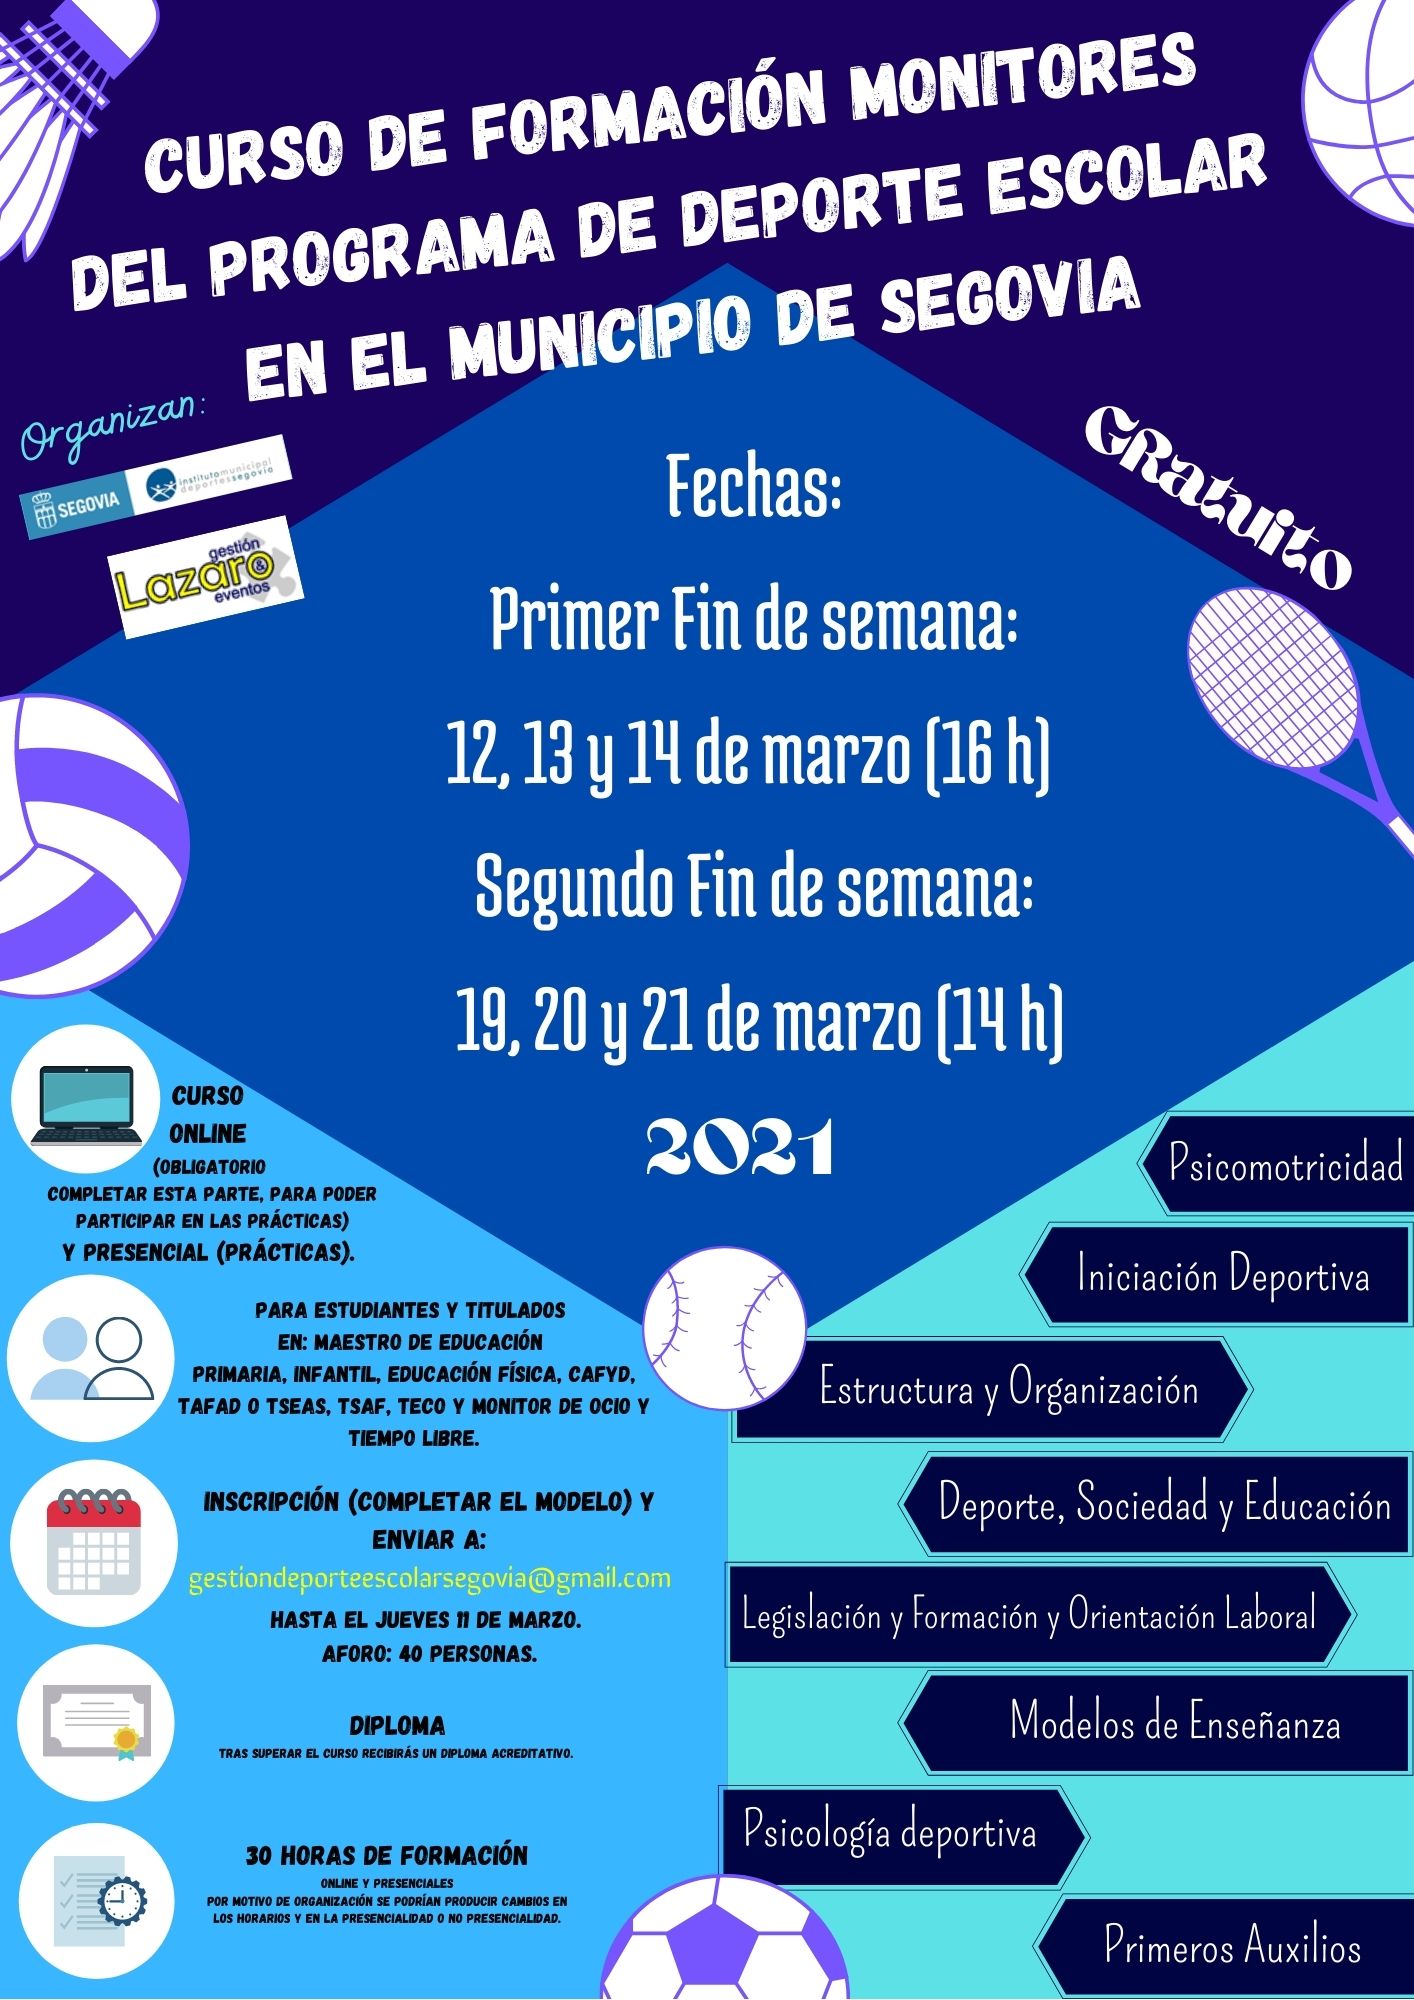 Curso de Formación de Monitores del Programa de Deporte Escolar en el Municipio de Segovia